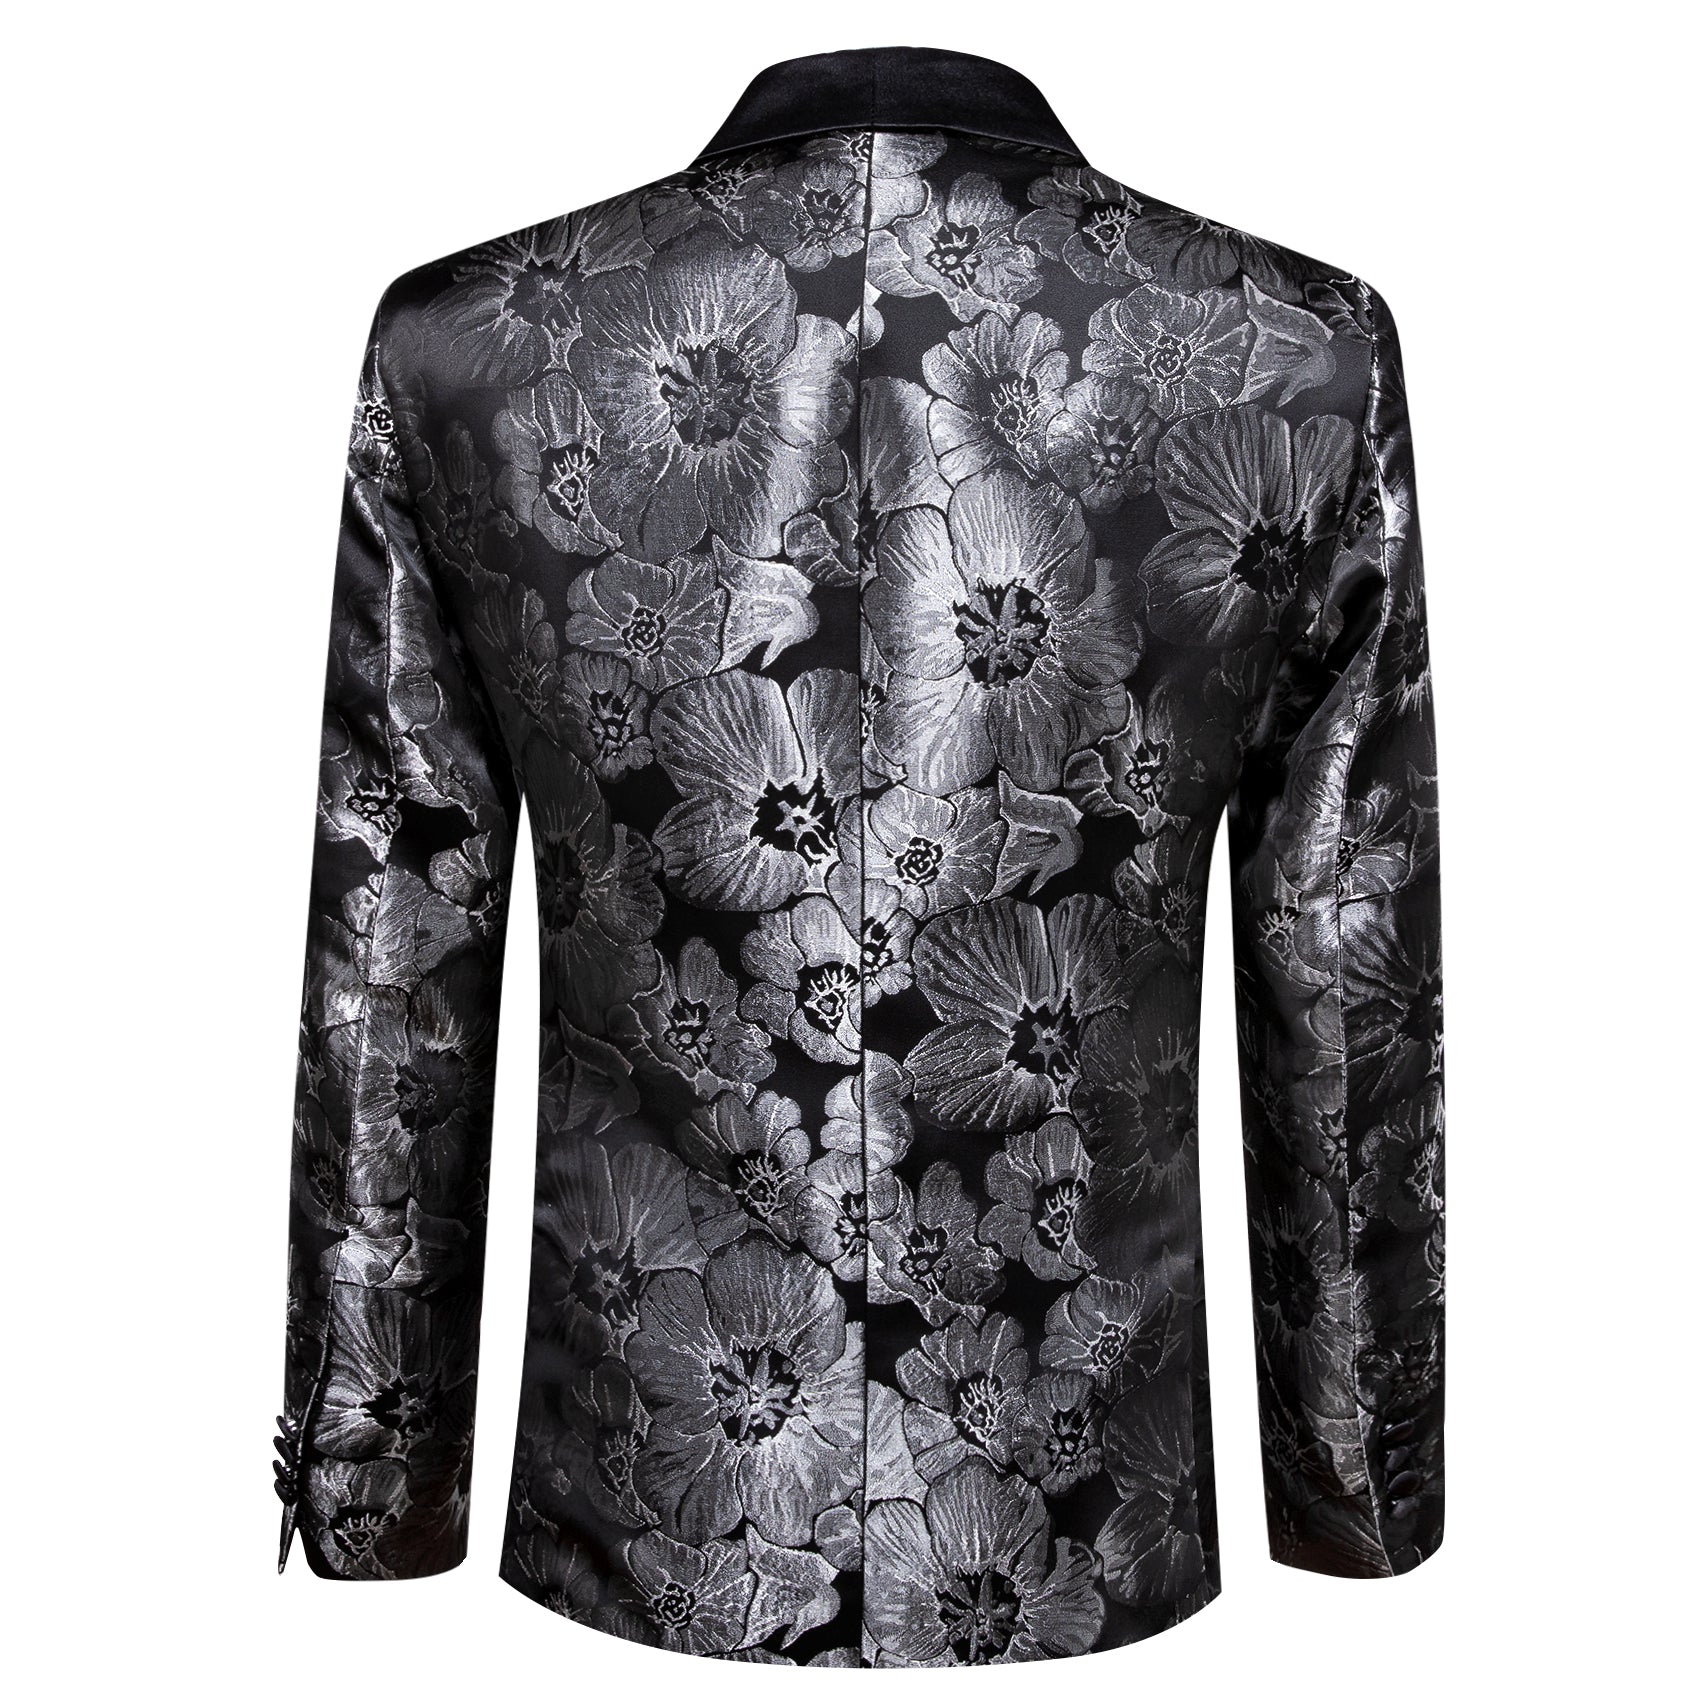 Men's Dress Party Black Floral Suit Jacket Slim One Button Stylish Blazer